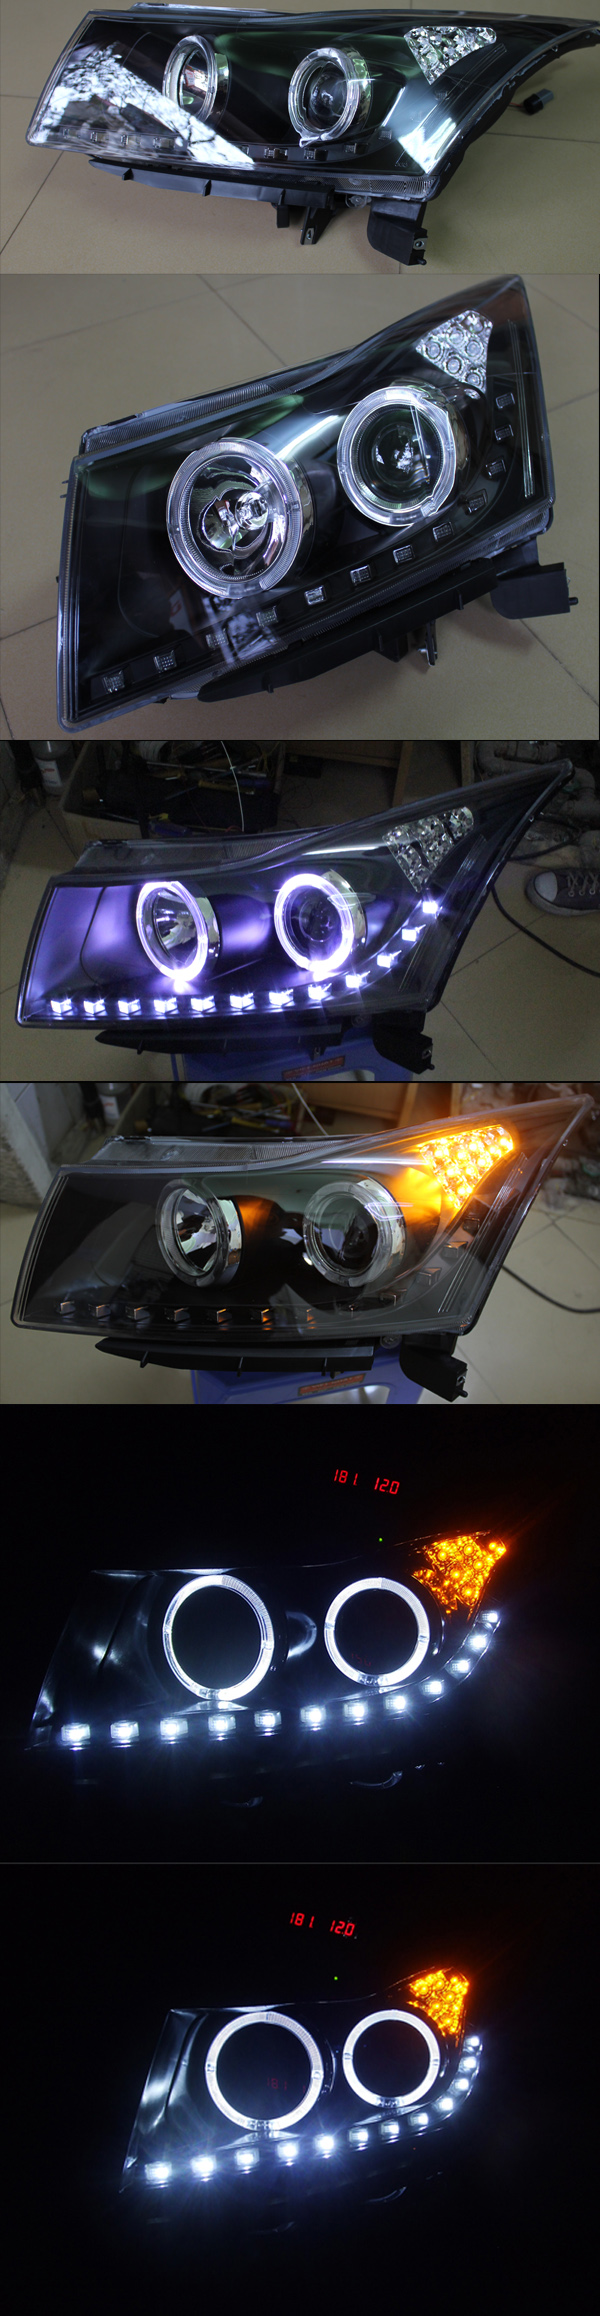 Đèn pha độ LED nguyên bộ dành cho xe Lacetti Cruze phiên bản 4